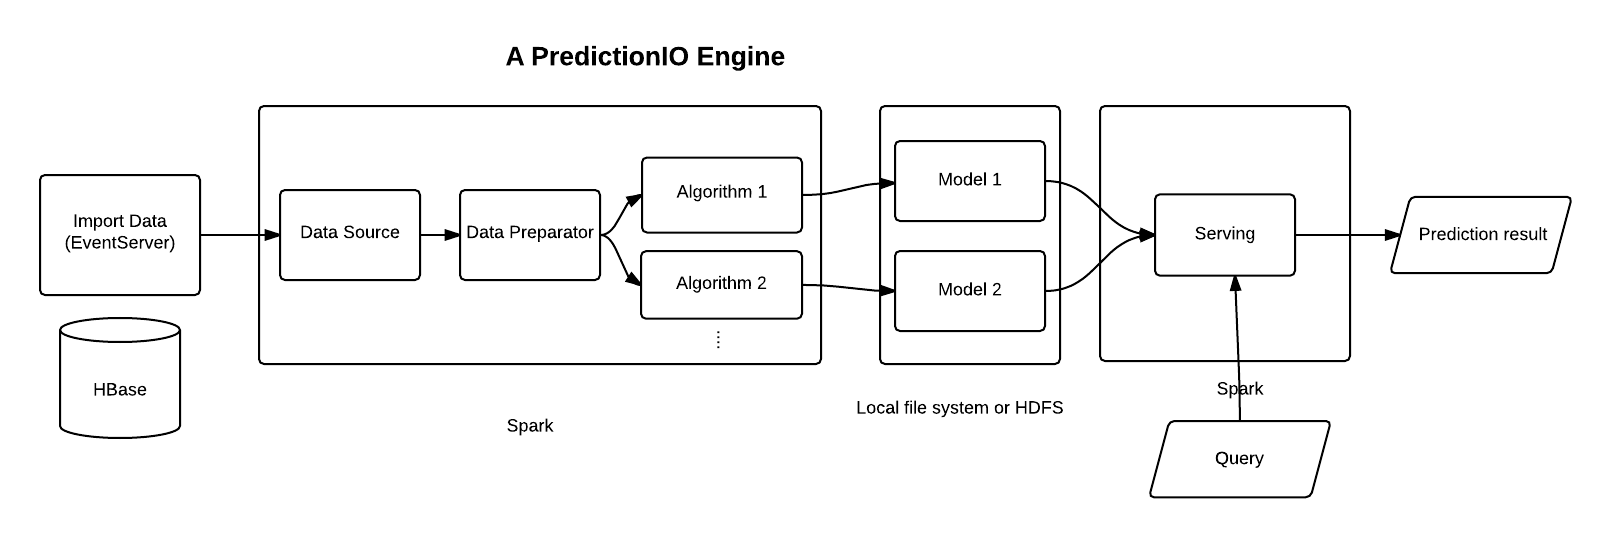 PredictionIO technology stack. Image credits PredictionIO.